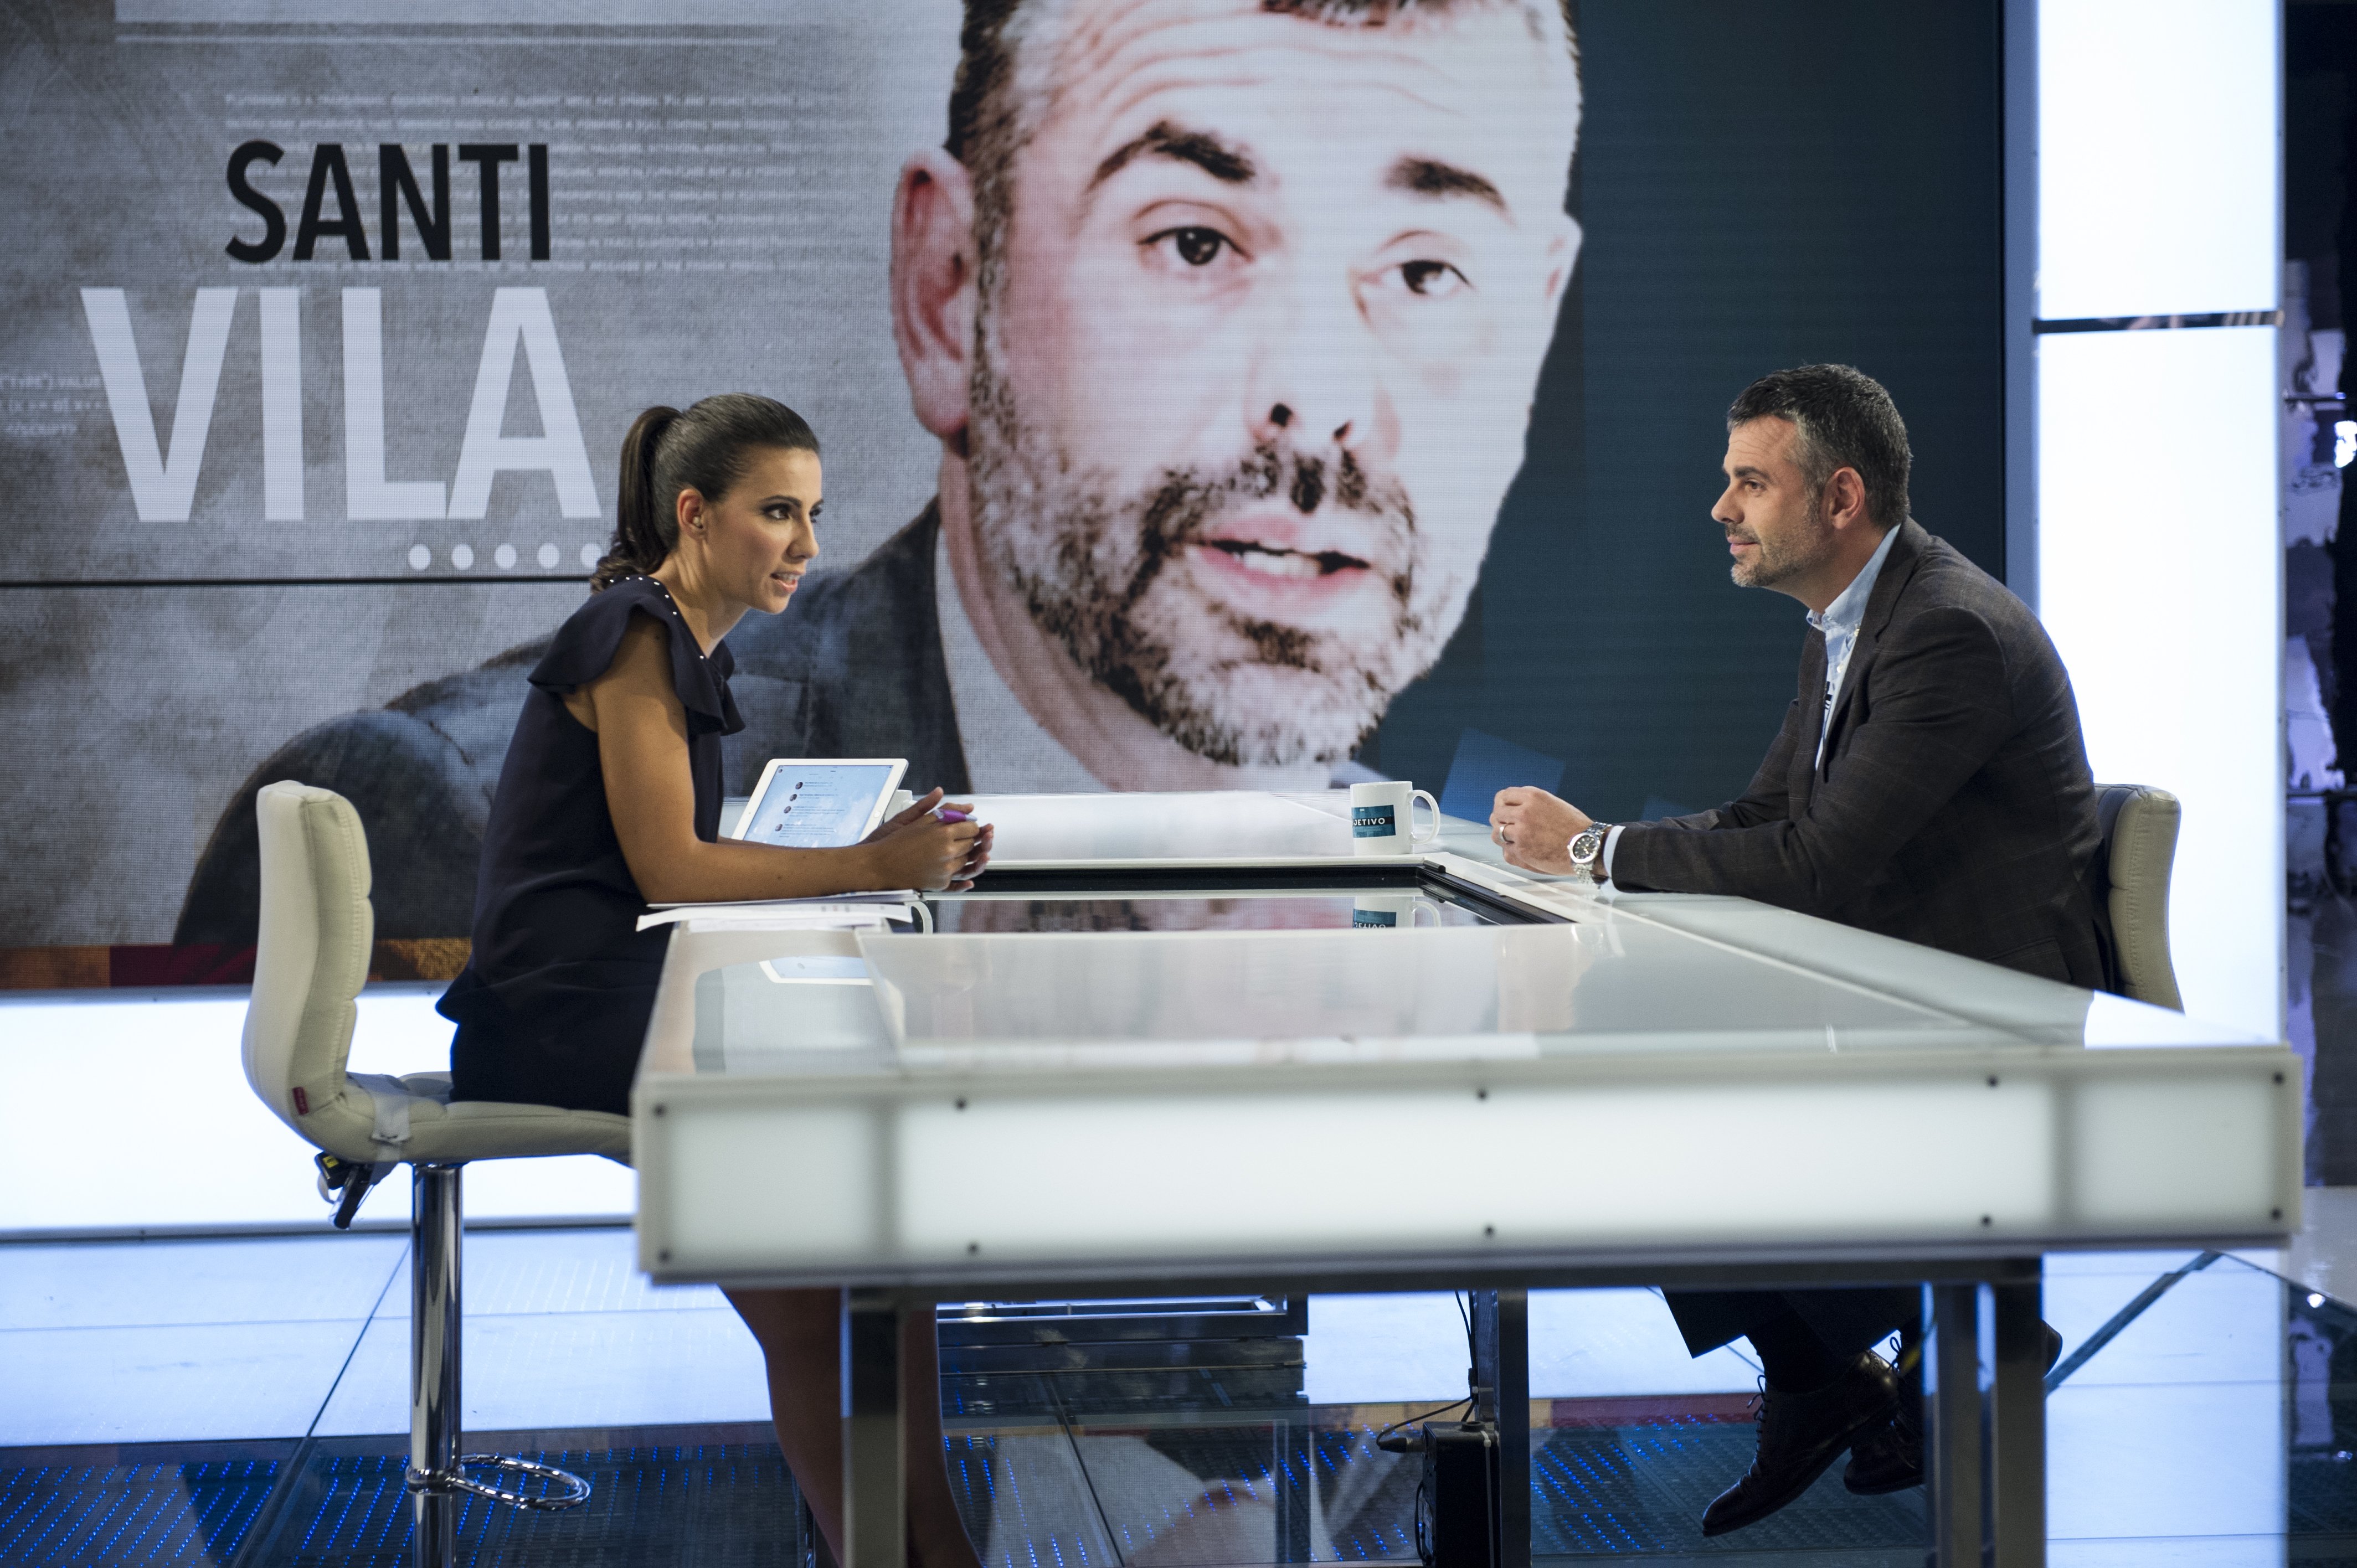 Santi Vila hace que TV3 pierda el liderazgo